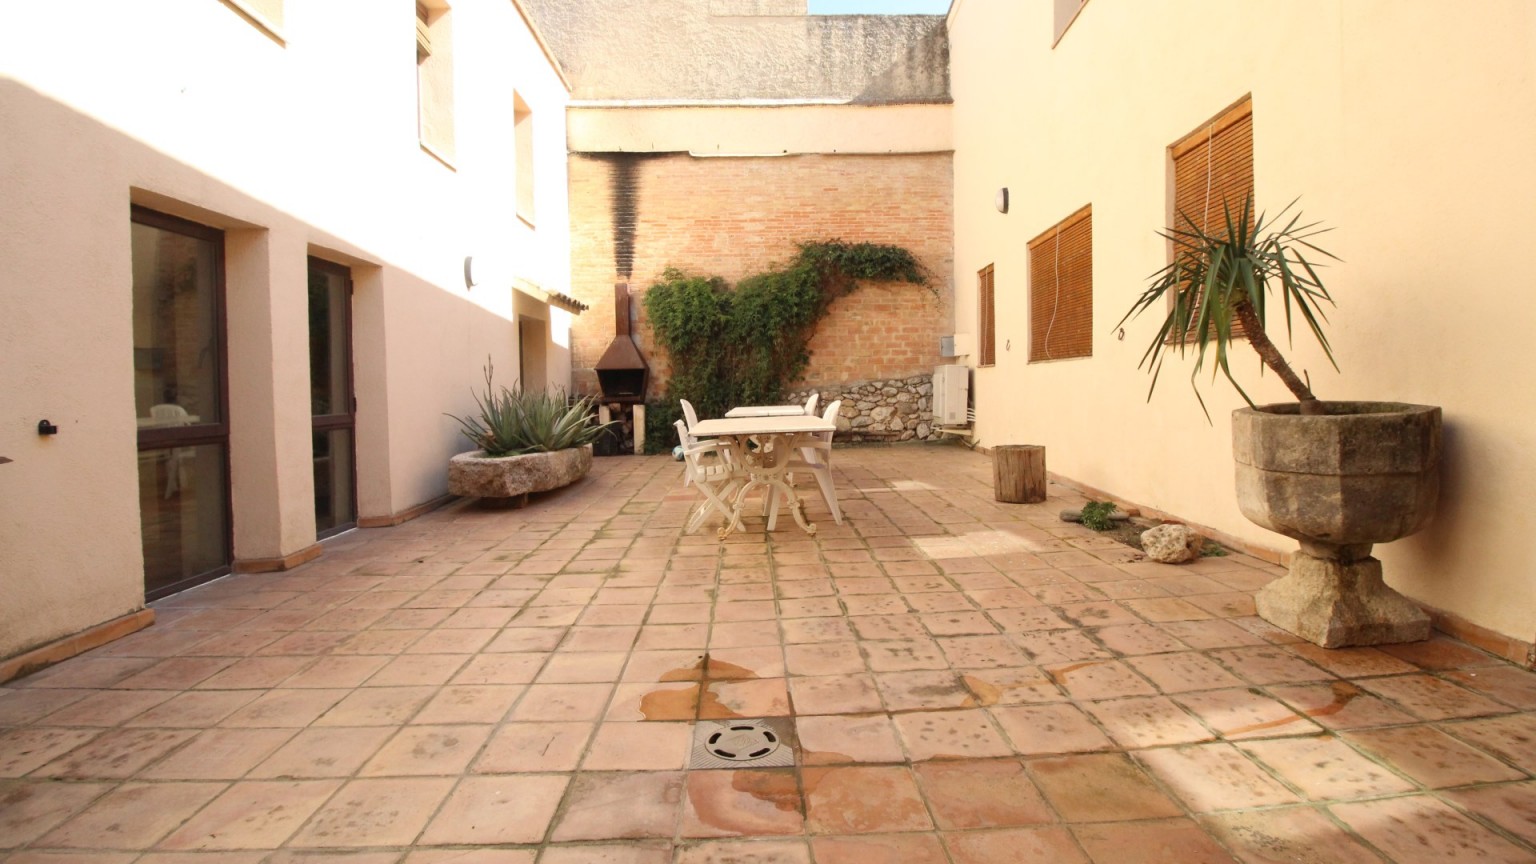 Casa rústica de pedra en venda, amb tres habitatges i jardí a Avinyonet de Puigventós.